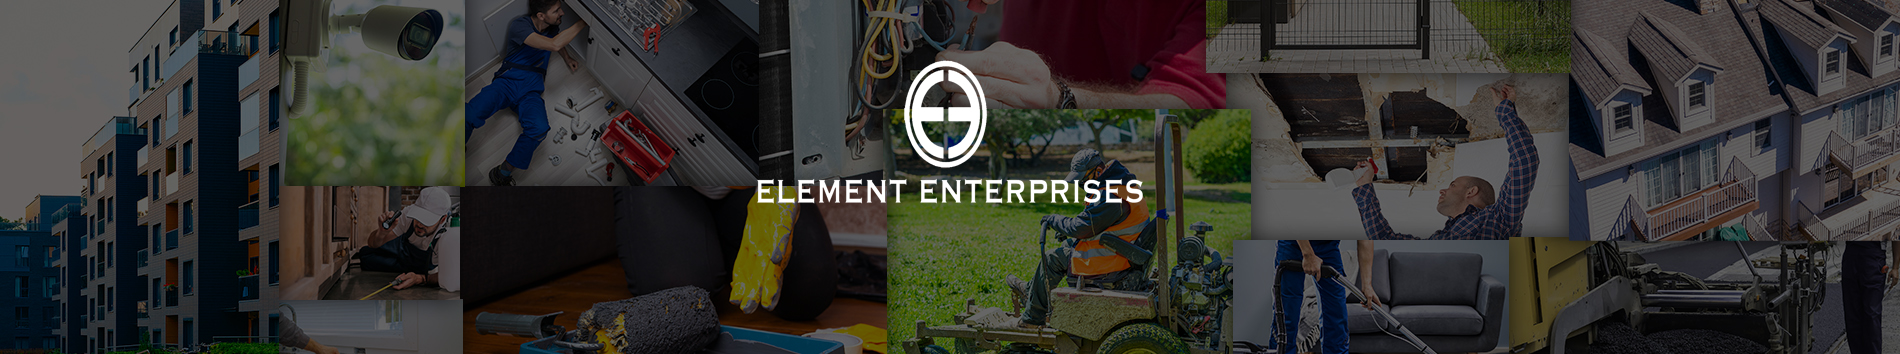 Element Enterprises